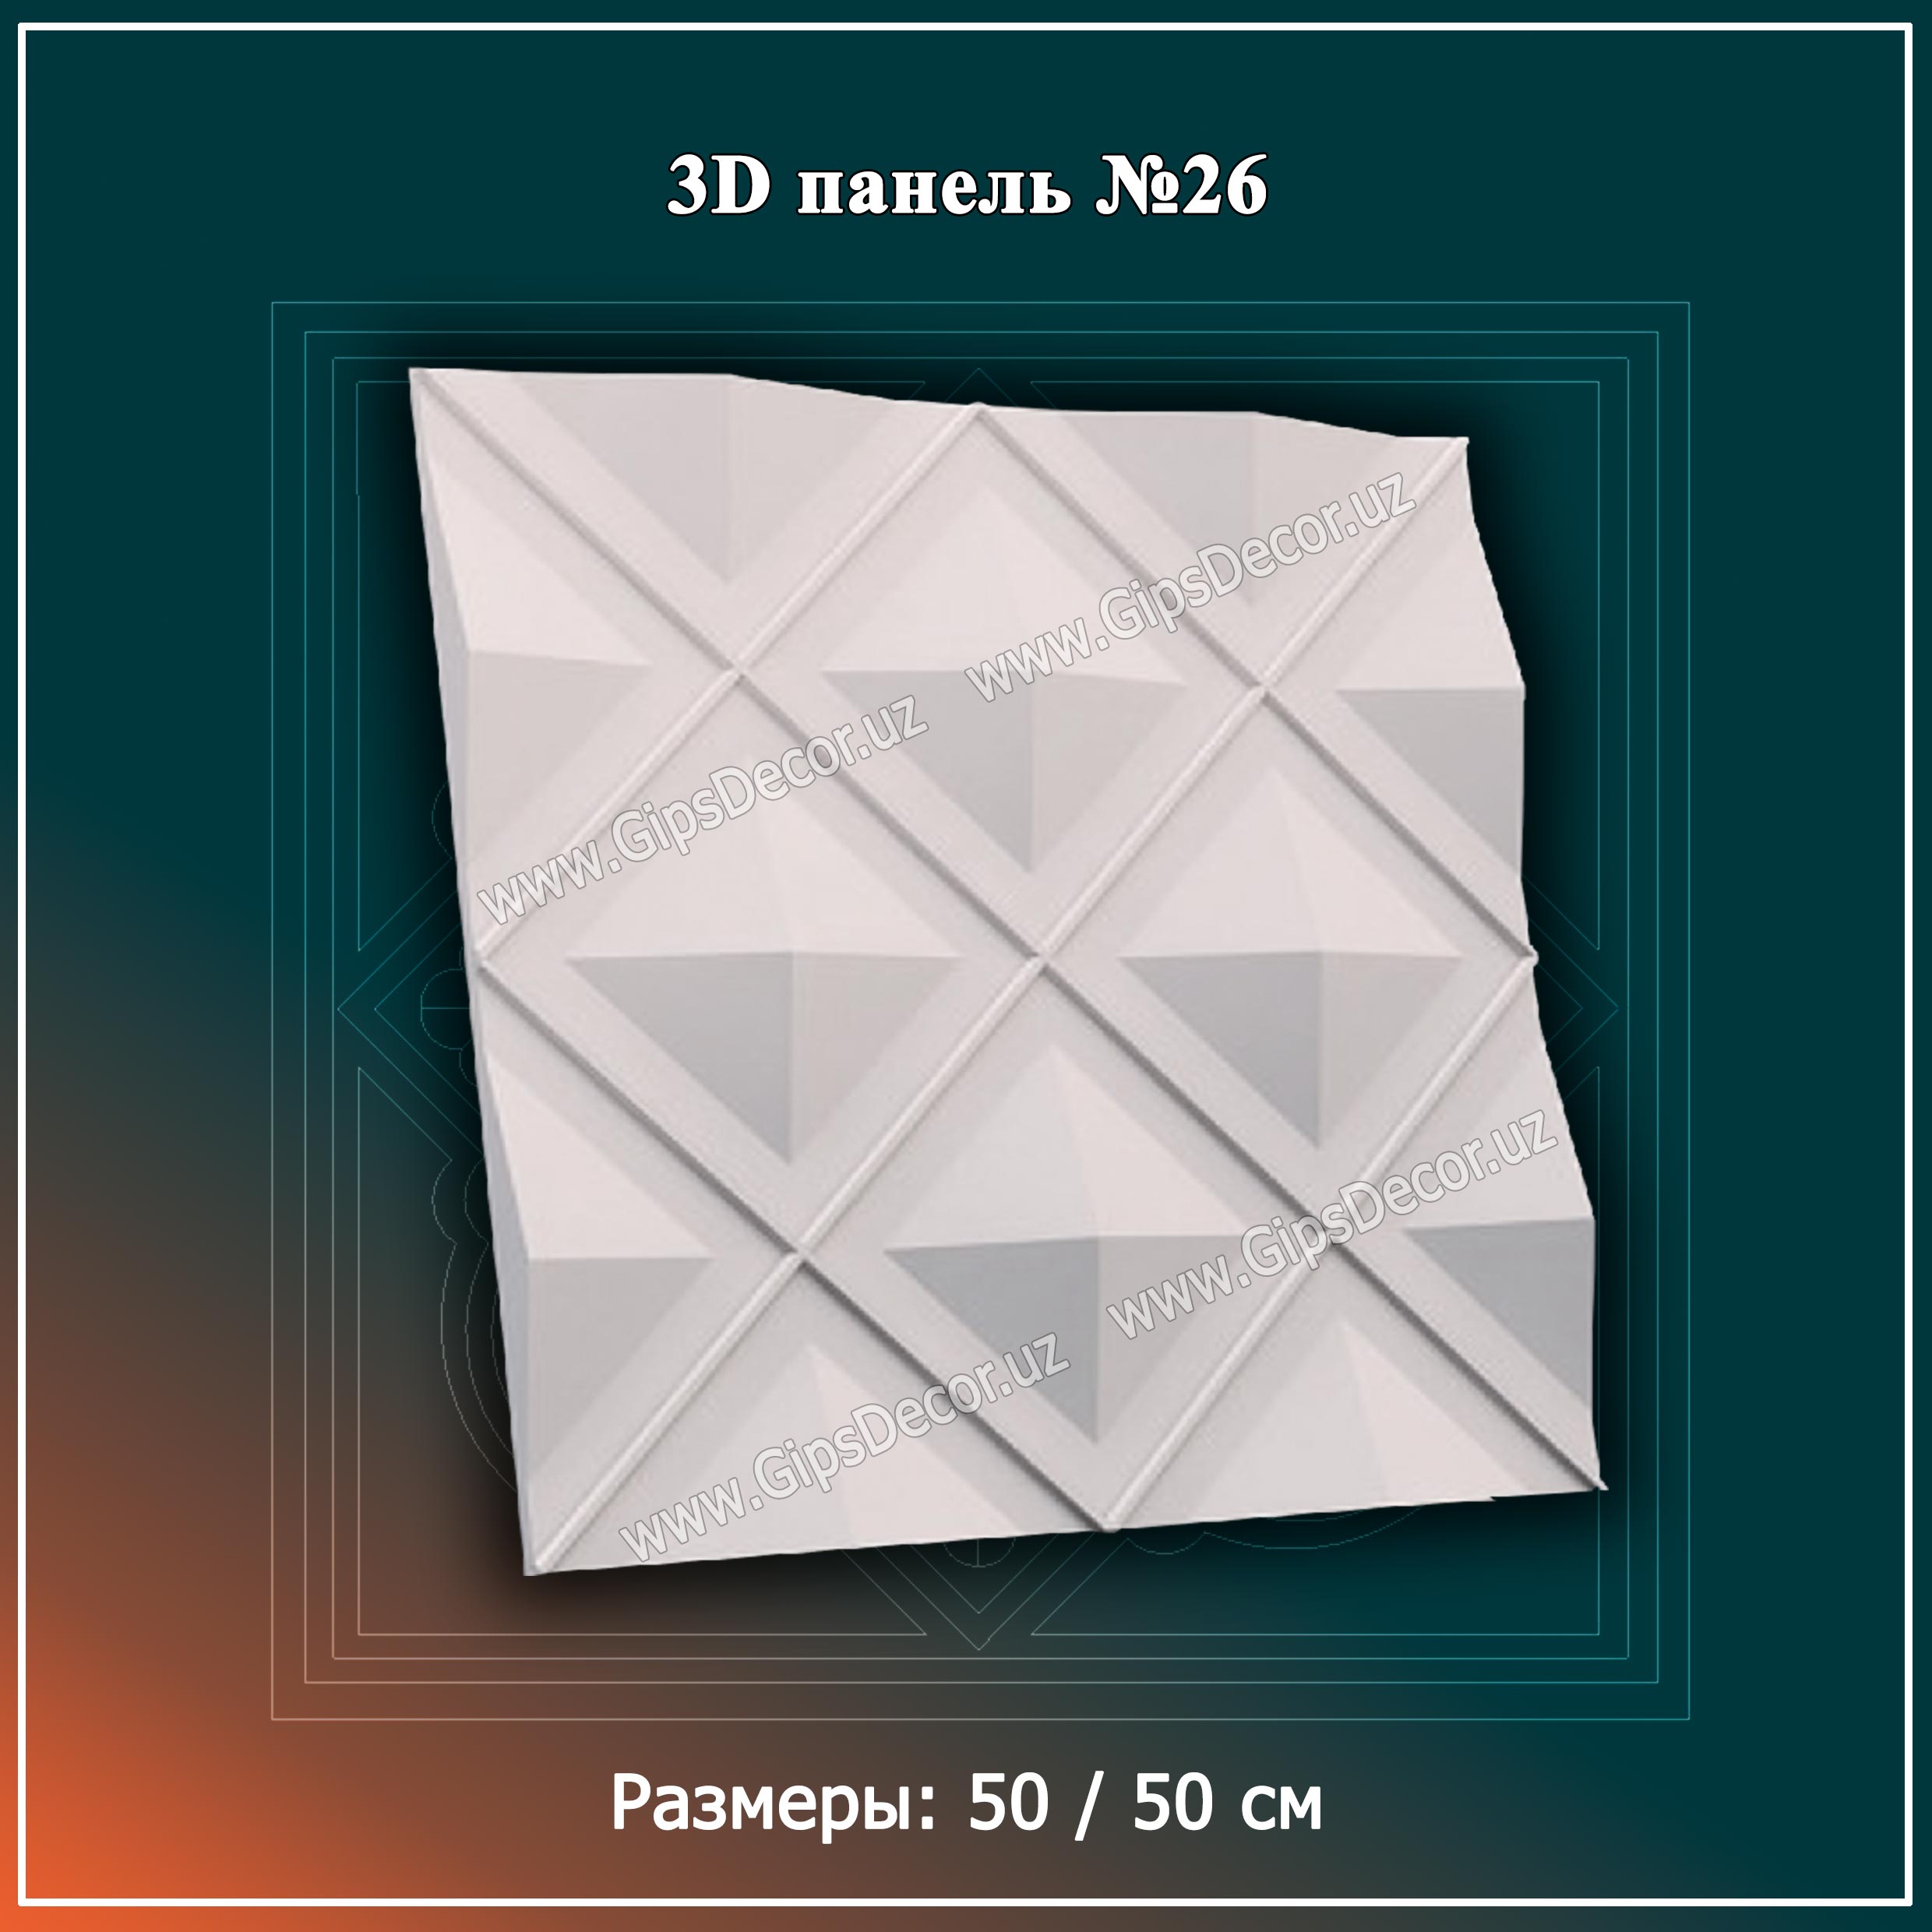 3D панель №26